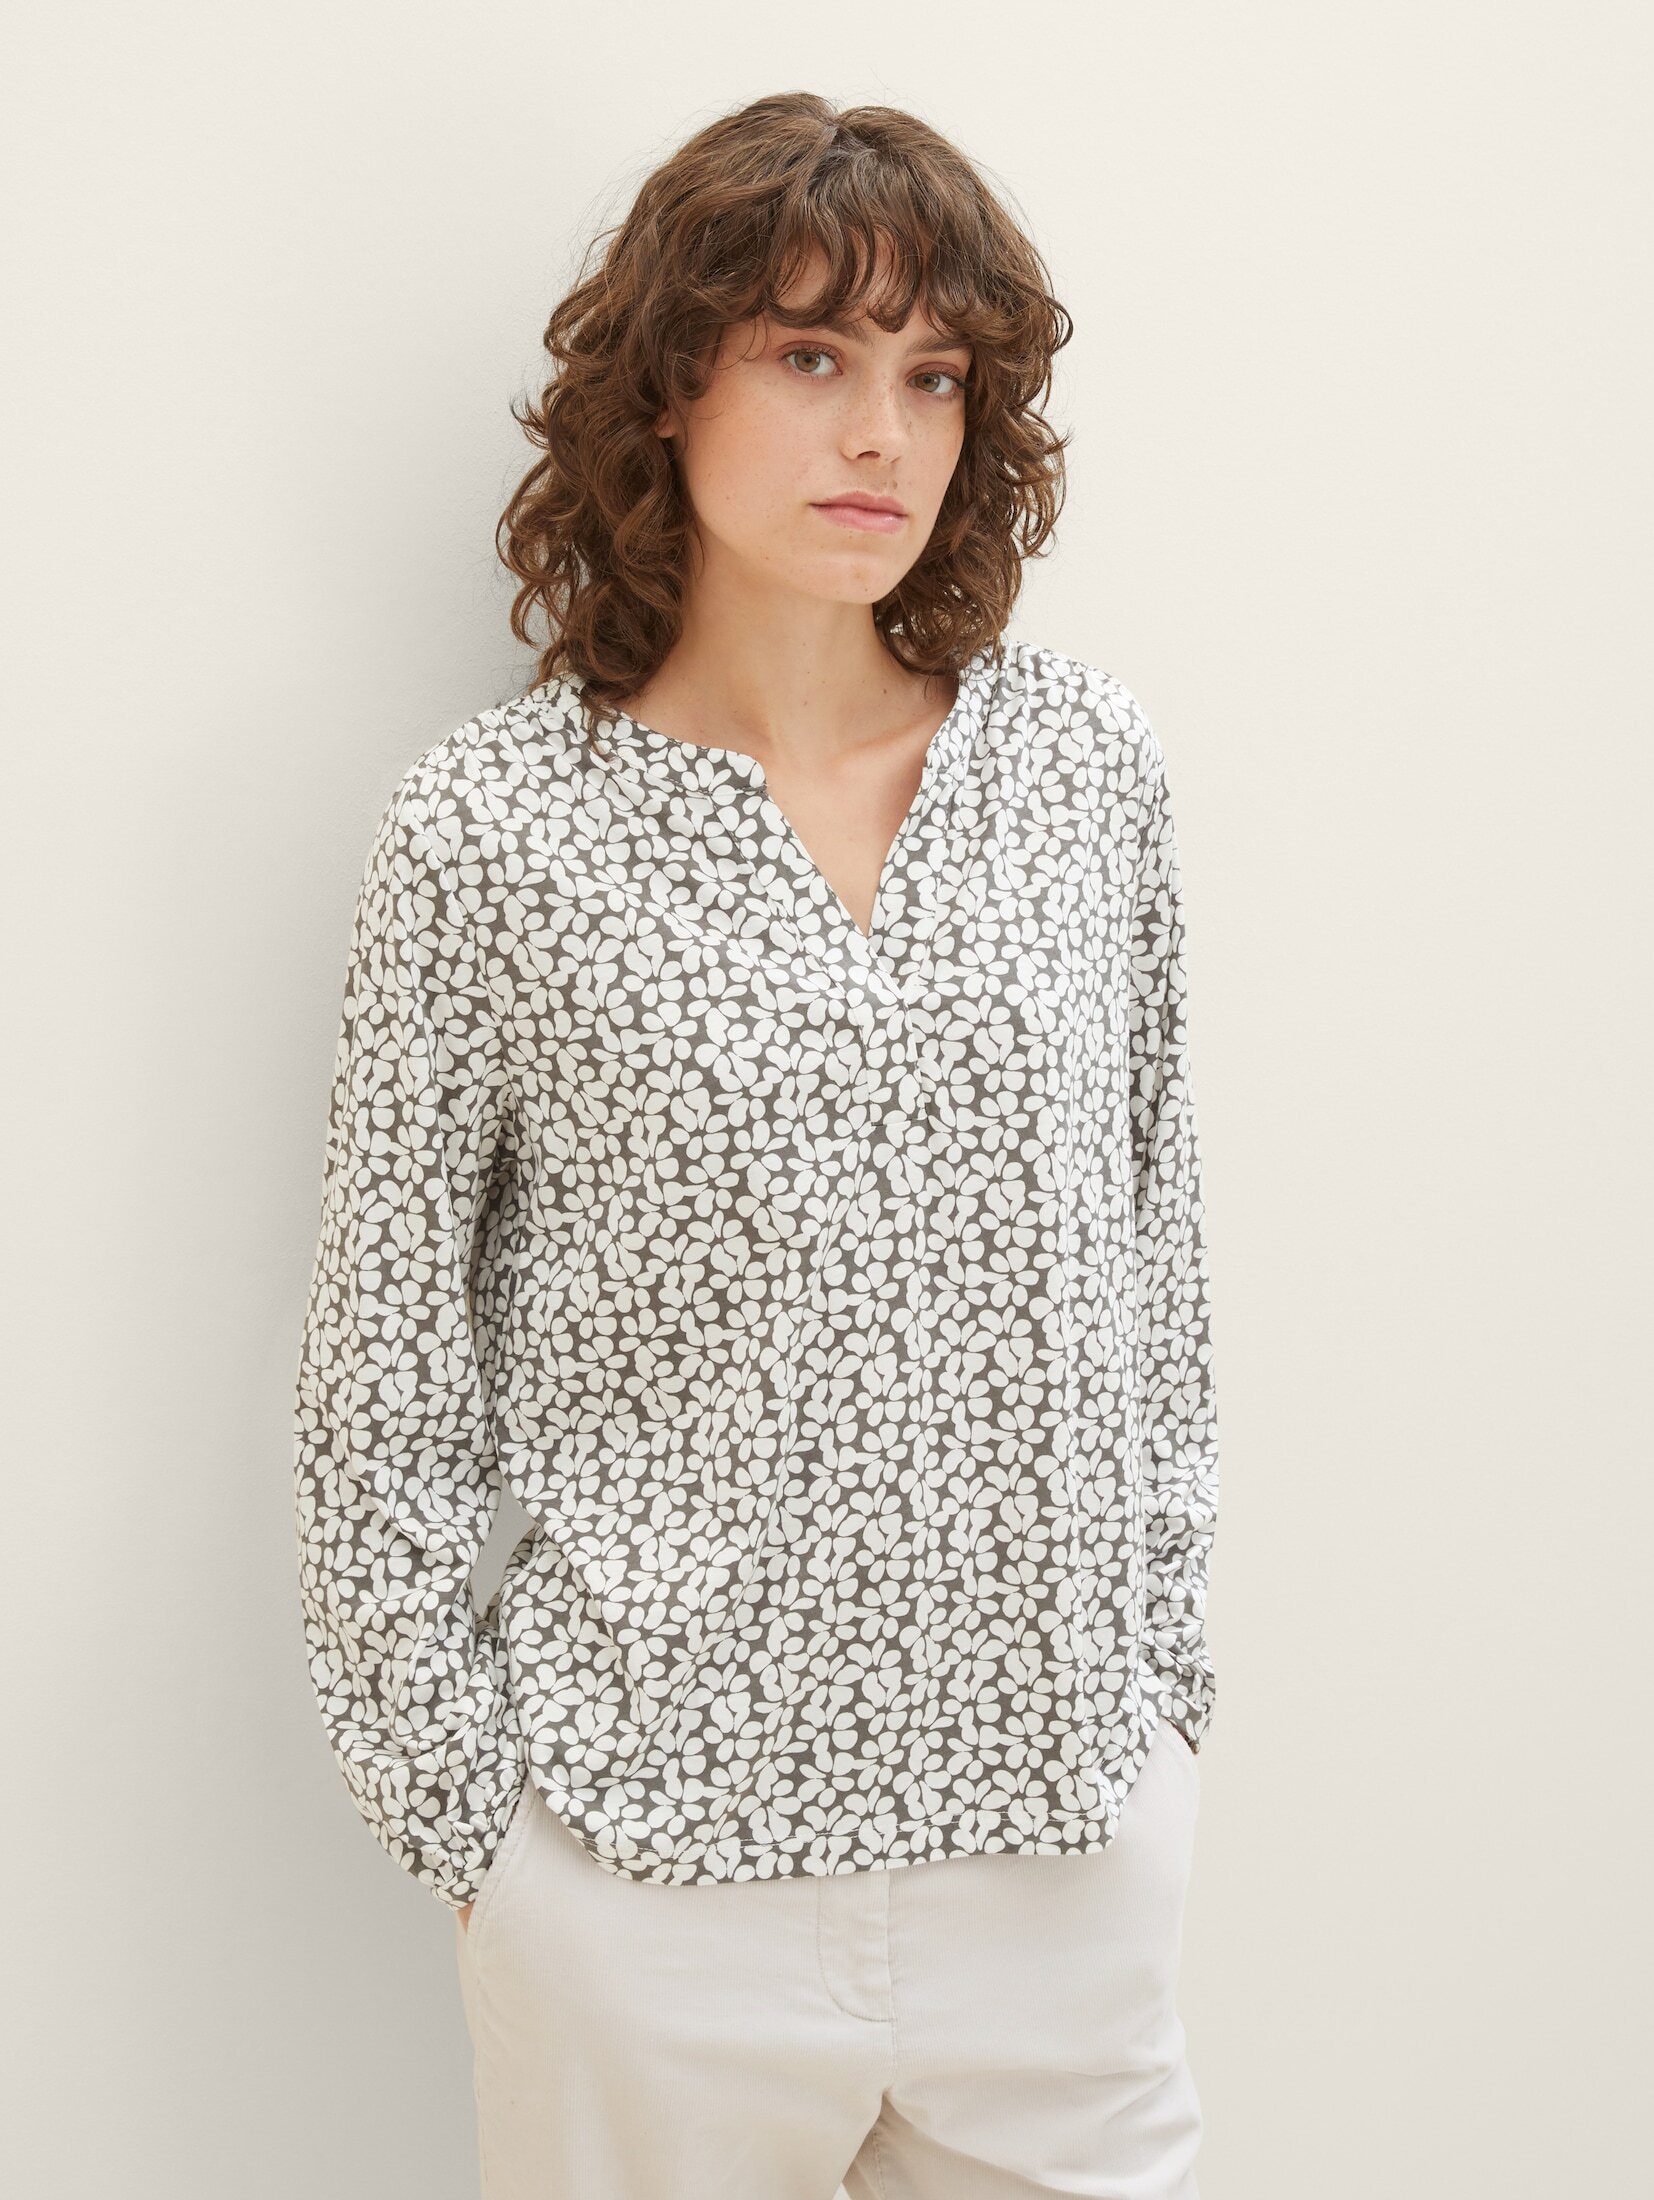 TAILOR T-Shirt grey Allover-Print design floral mit TOM Bluse